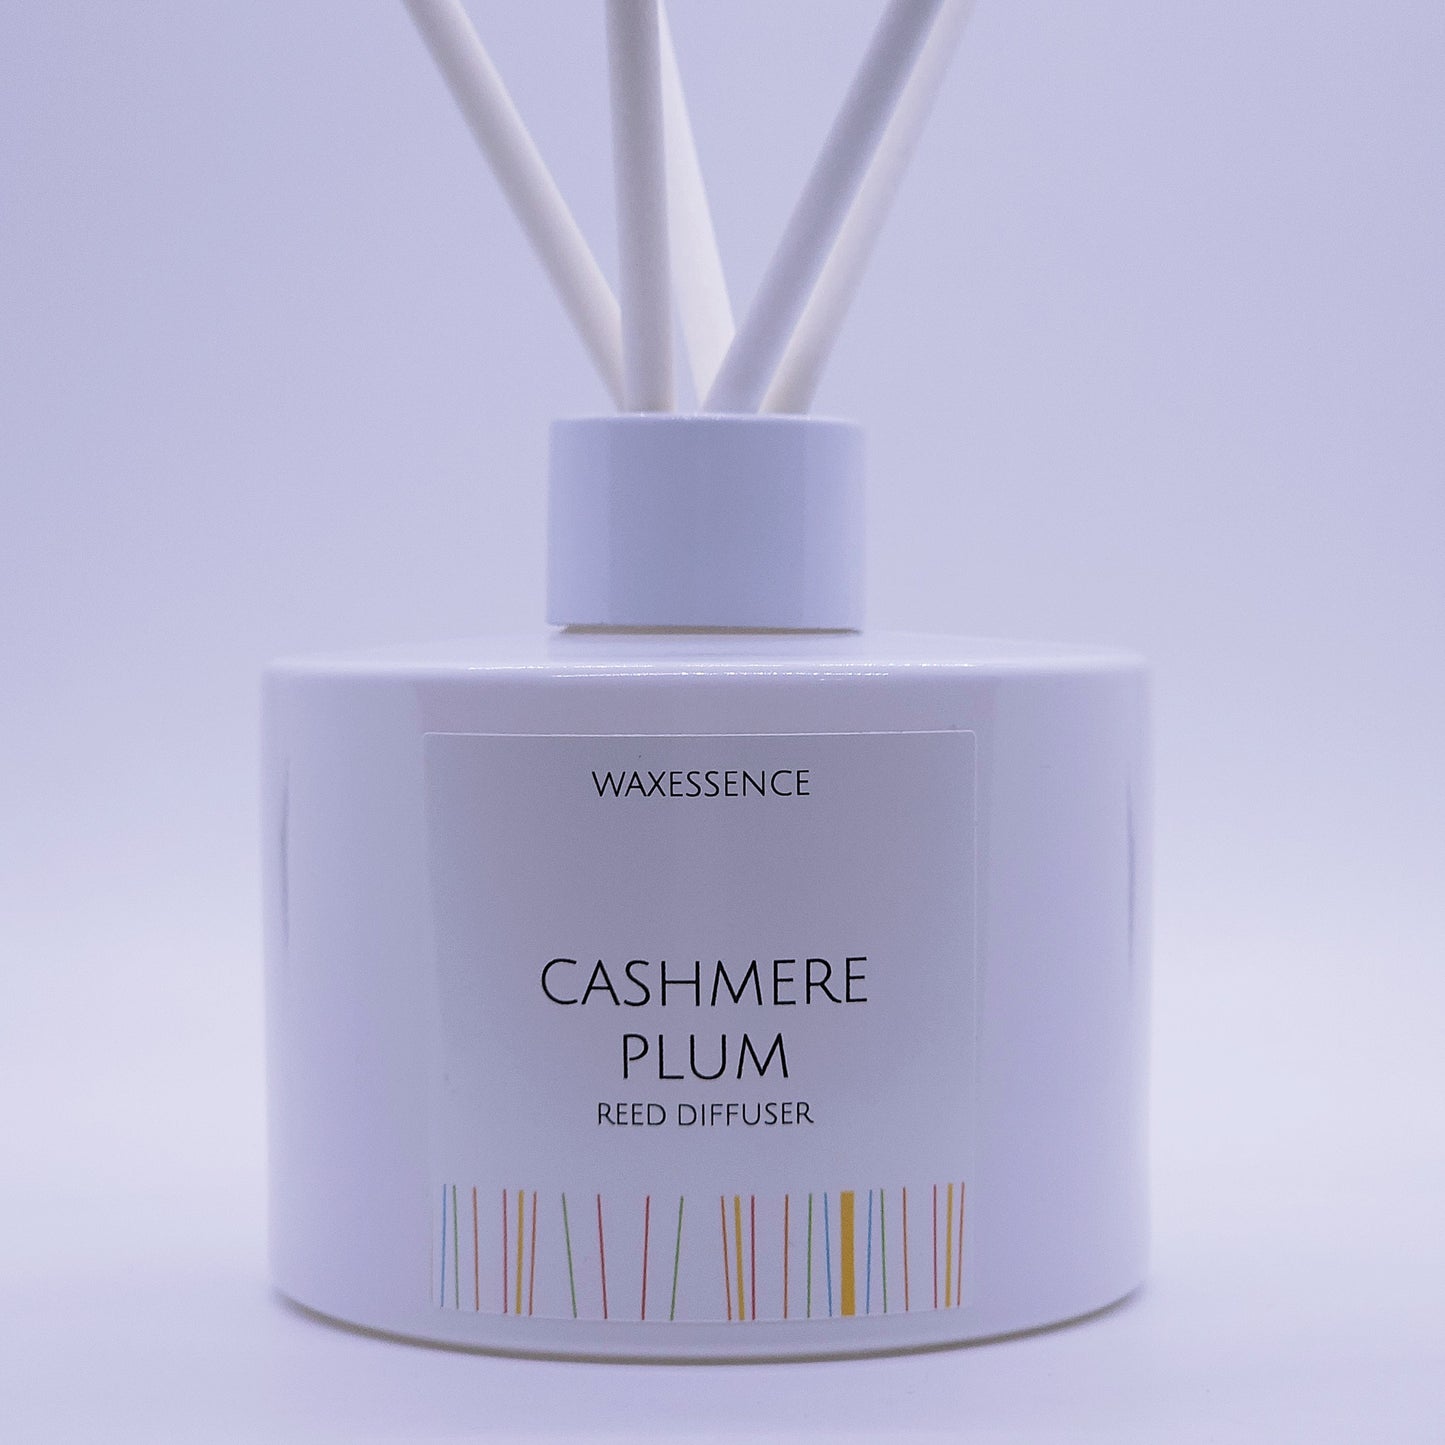 Cashmere Plum Reed Diffuser | Essenza Gloss White  | Aromatherapy Home Decor | Diffuser Oil | 6.8 fl. oz